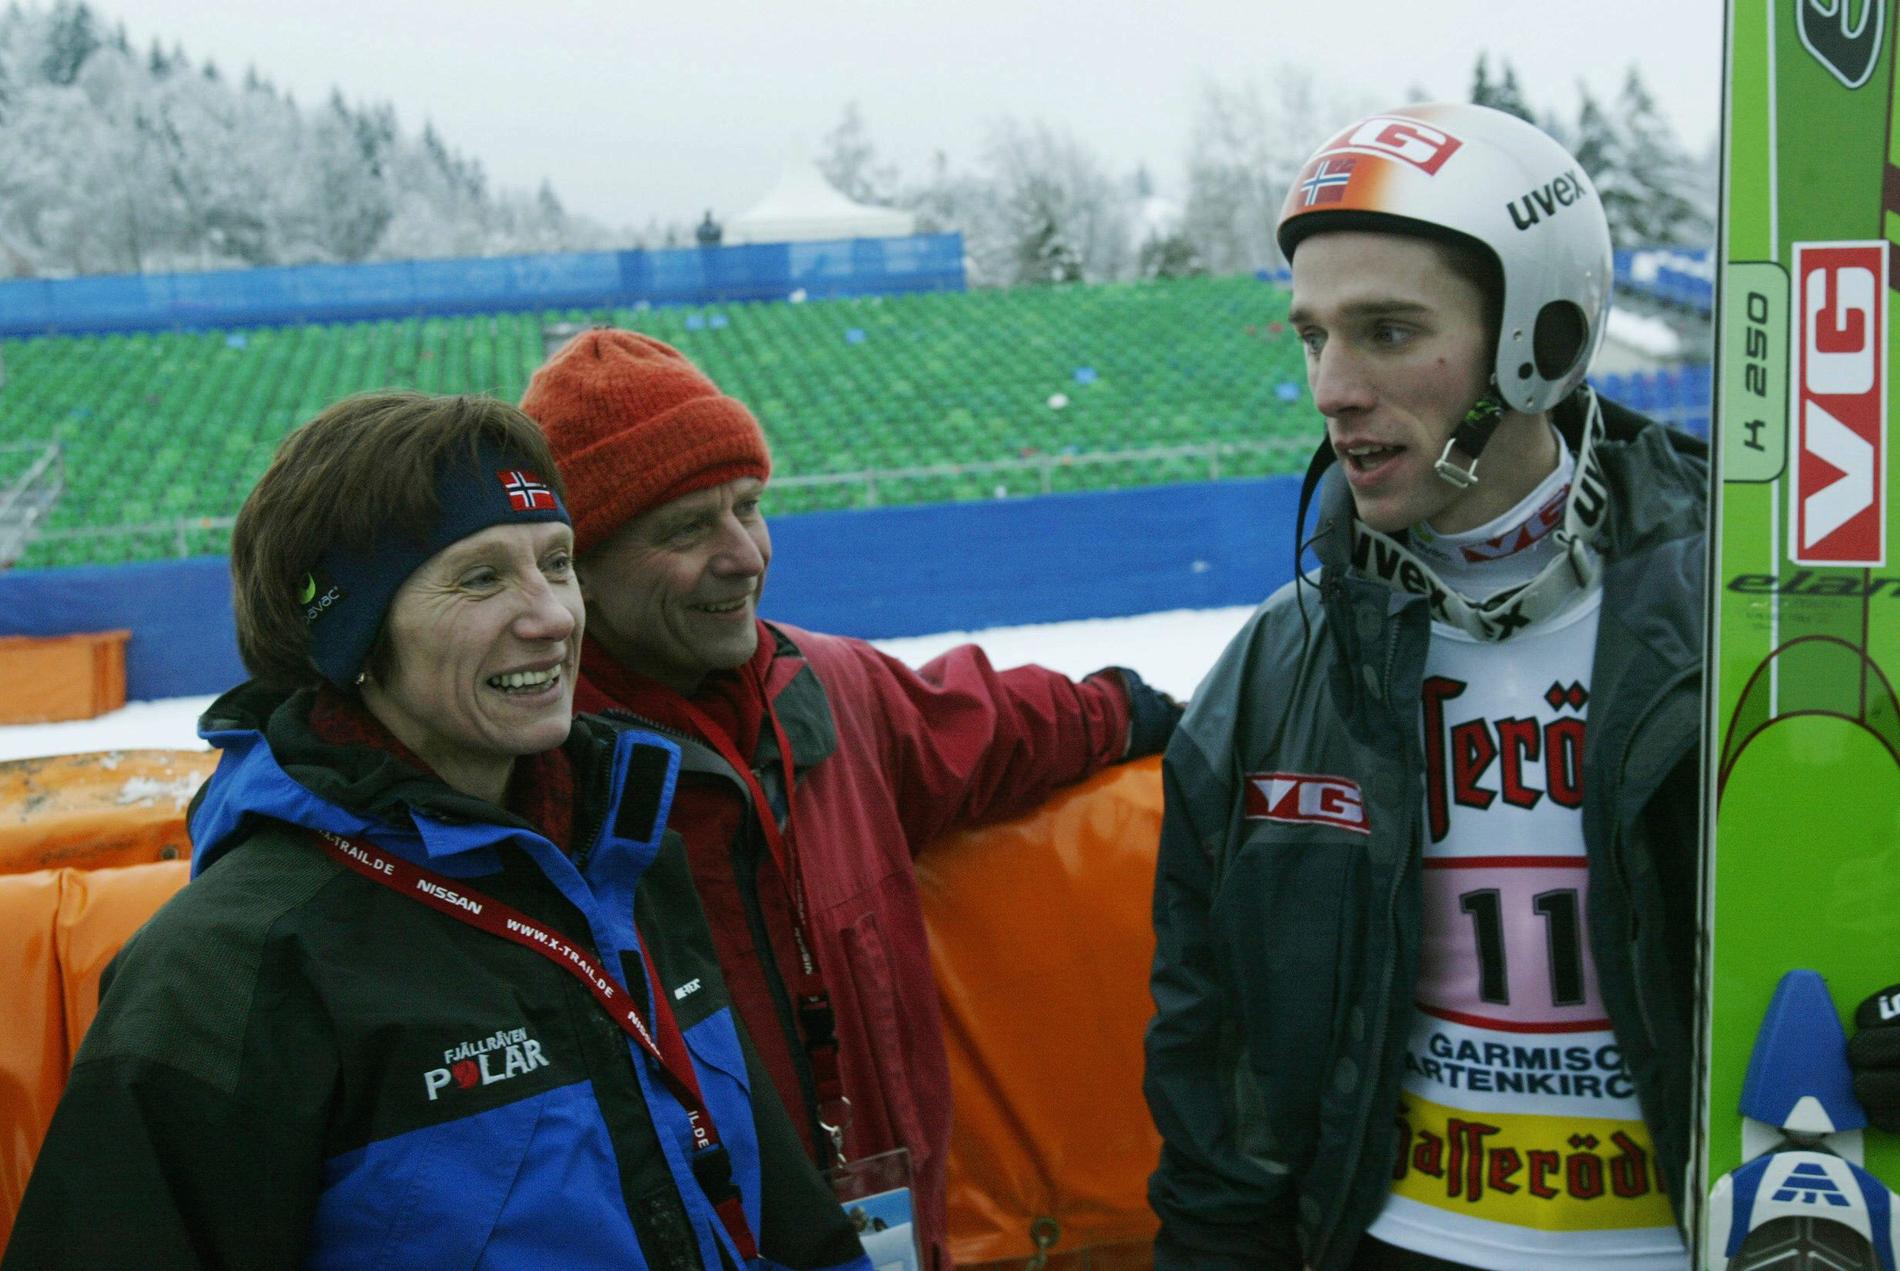 OPPGITT: Steinar Berthelsen, i midten, synes Skiforbundets coronaveileder er for tøff. Her fra da sønnen Sigurd Pettersen vant hoppuken i 2004. Til venstre mor Sølvi Pettersen.